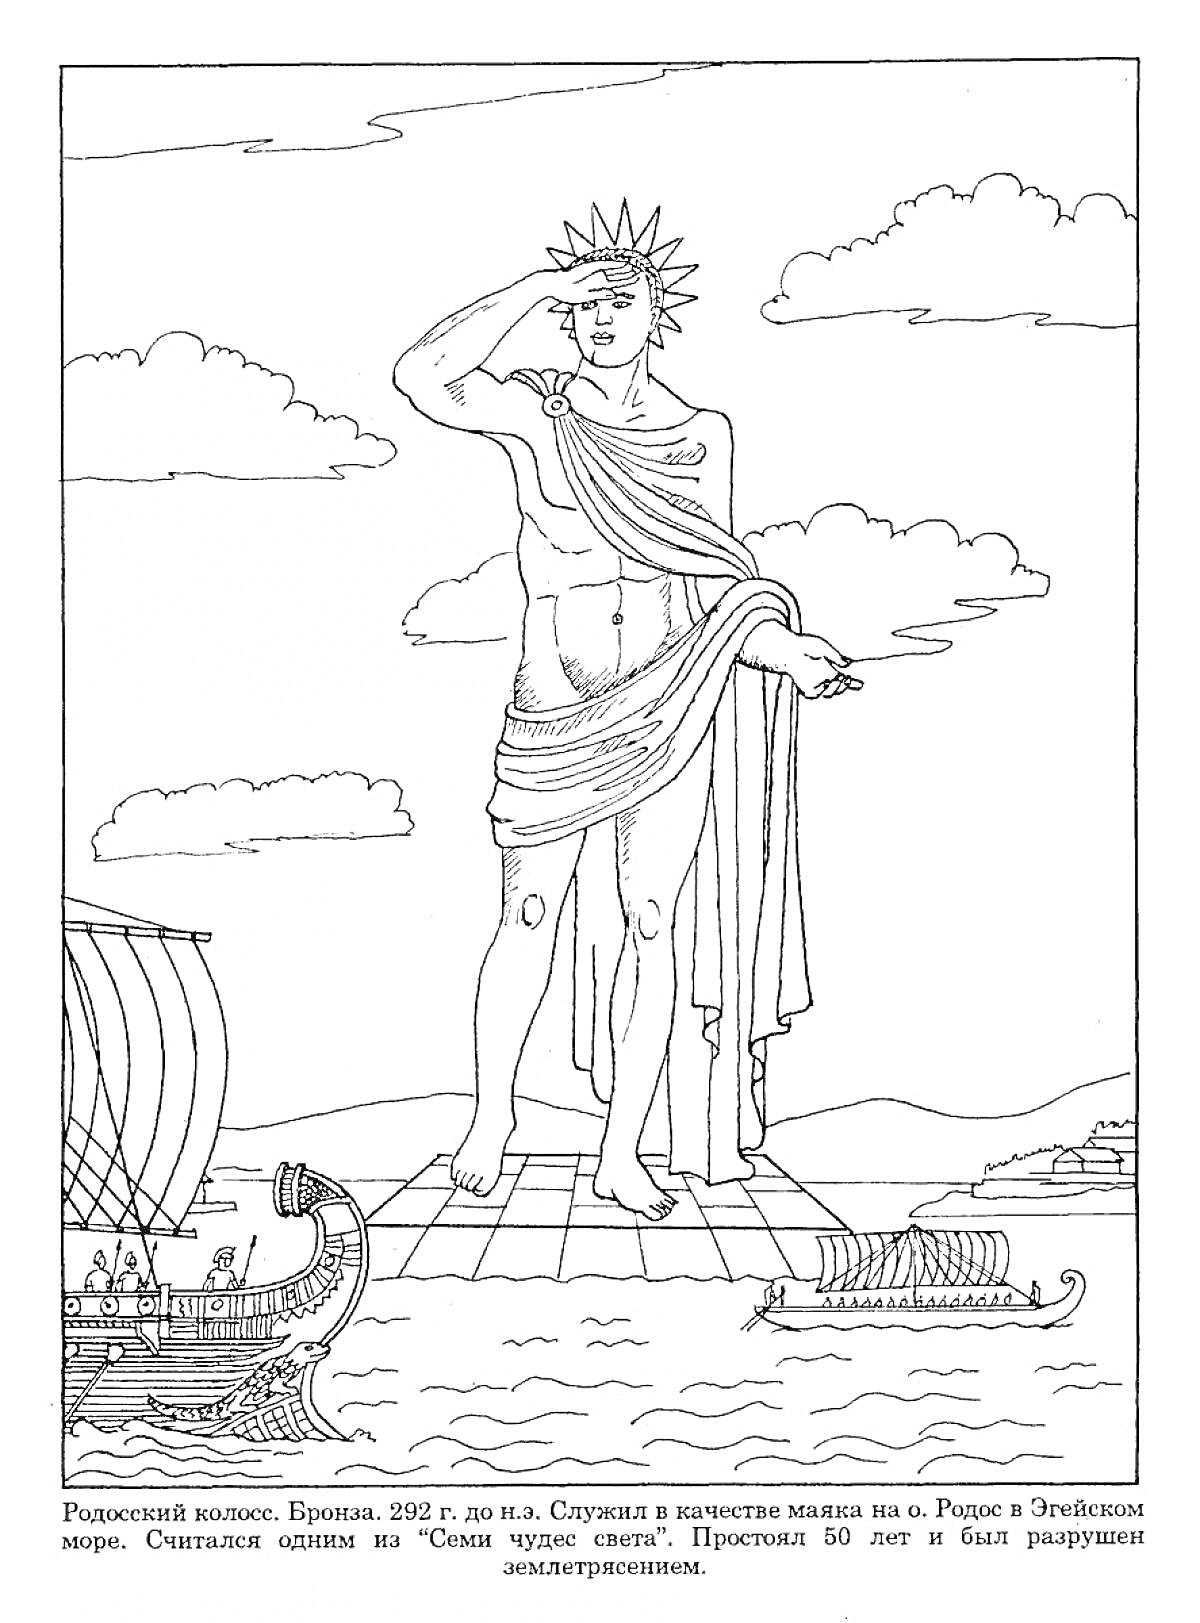 Статуя древнего маяка на острове Родос с кораблями на воде и облаками на небе